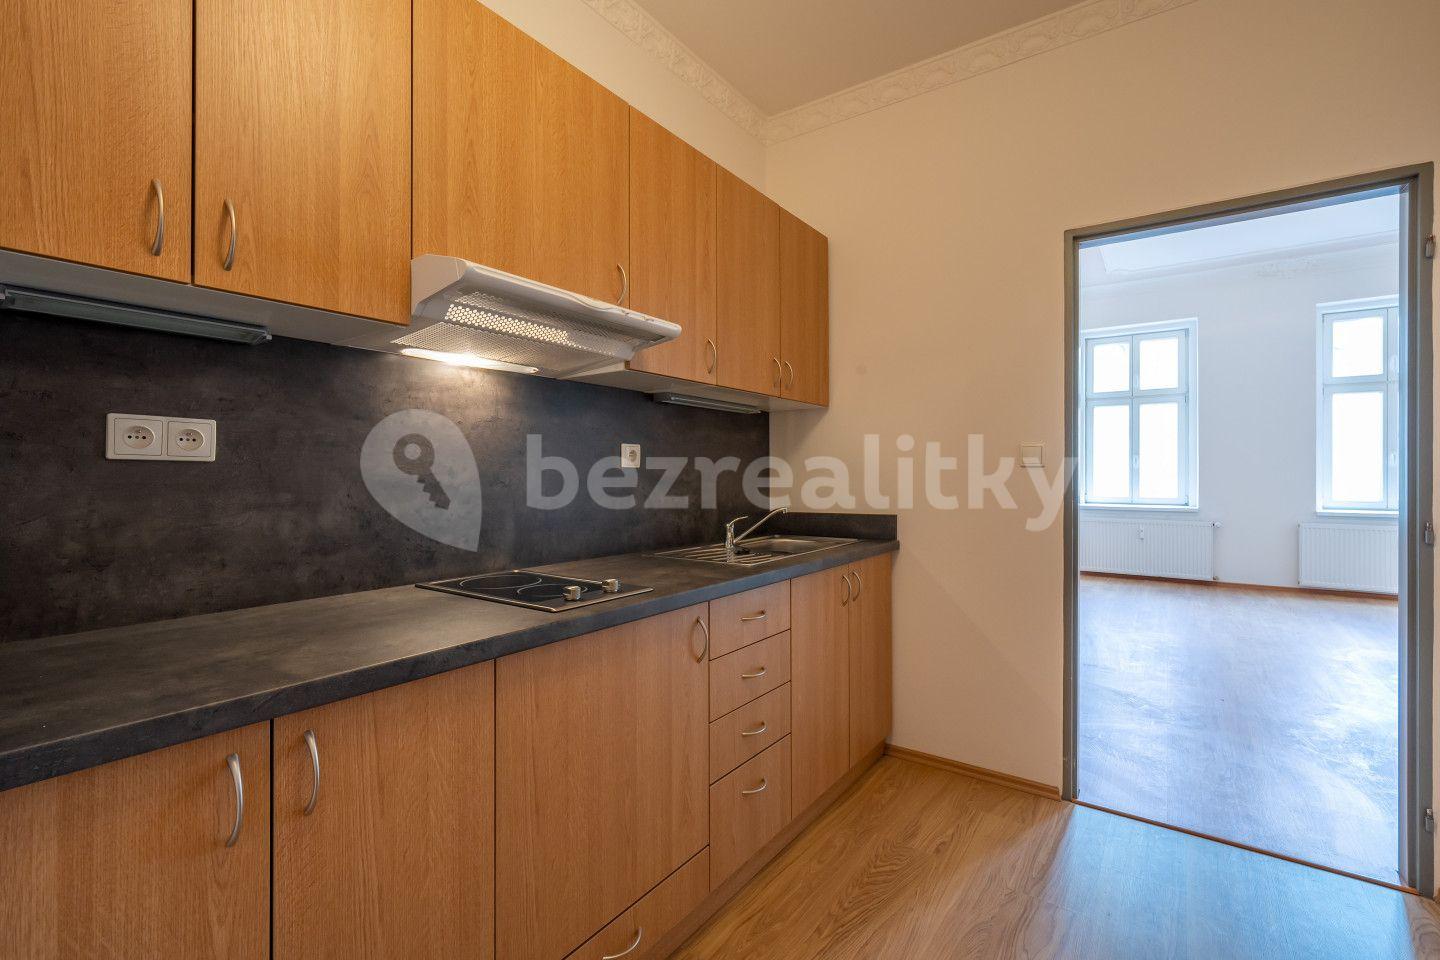 1 bedroom with open-plan kitchen flat for sale, 55 m², Anenské náměstí, Jablonec nad Nisou, Liberecký Region